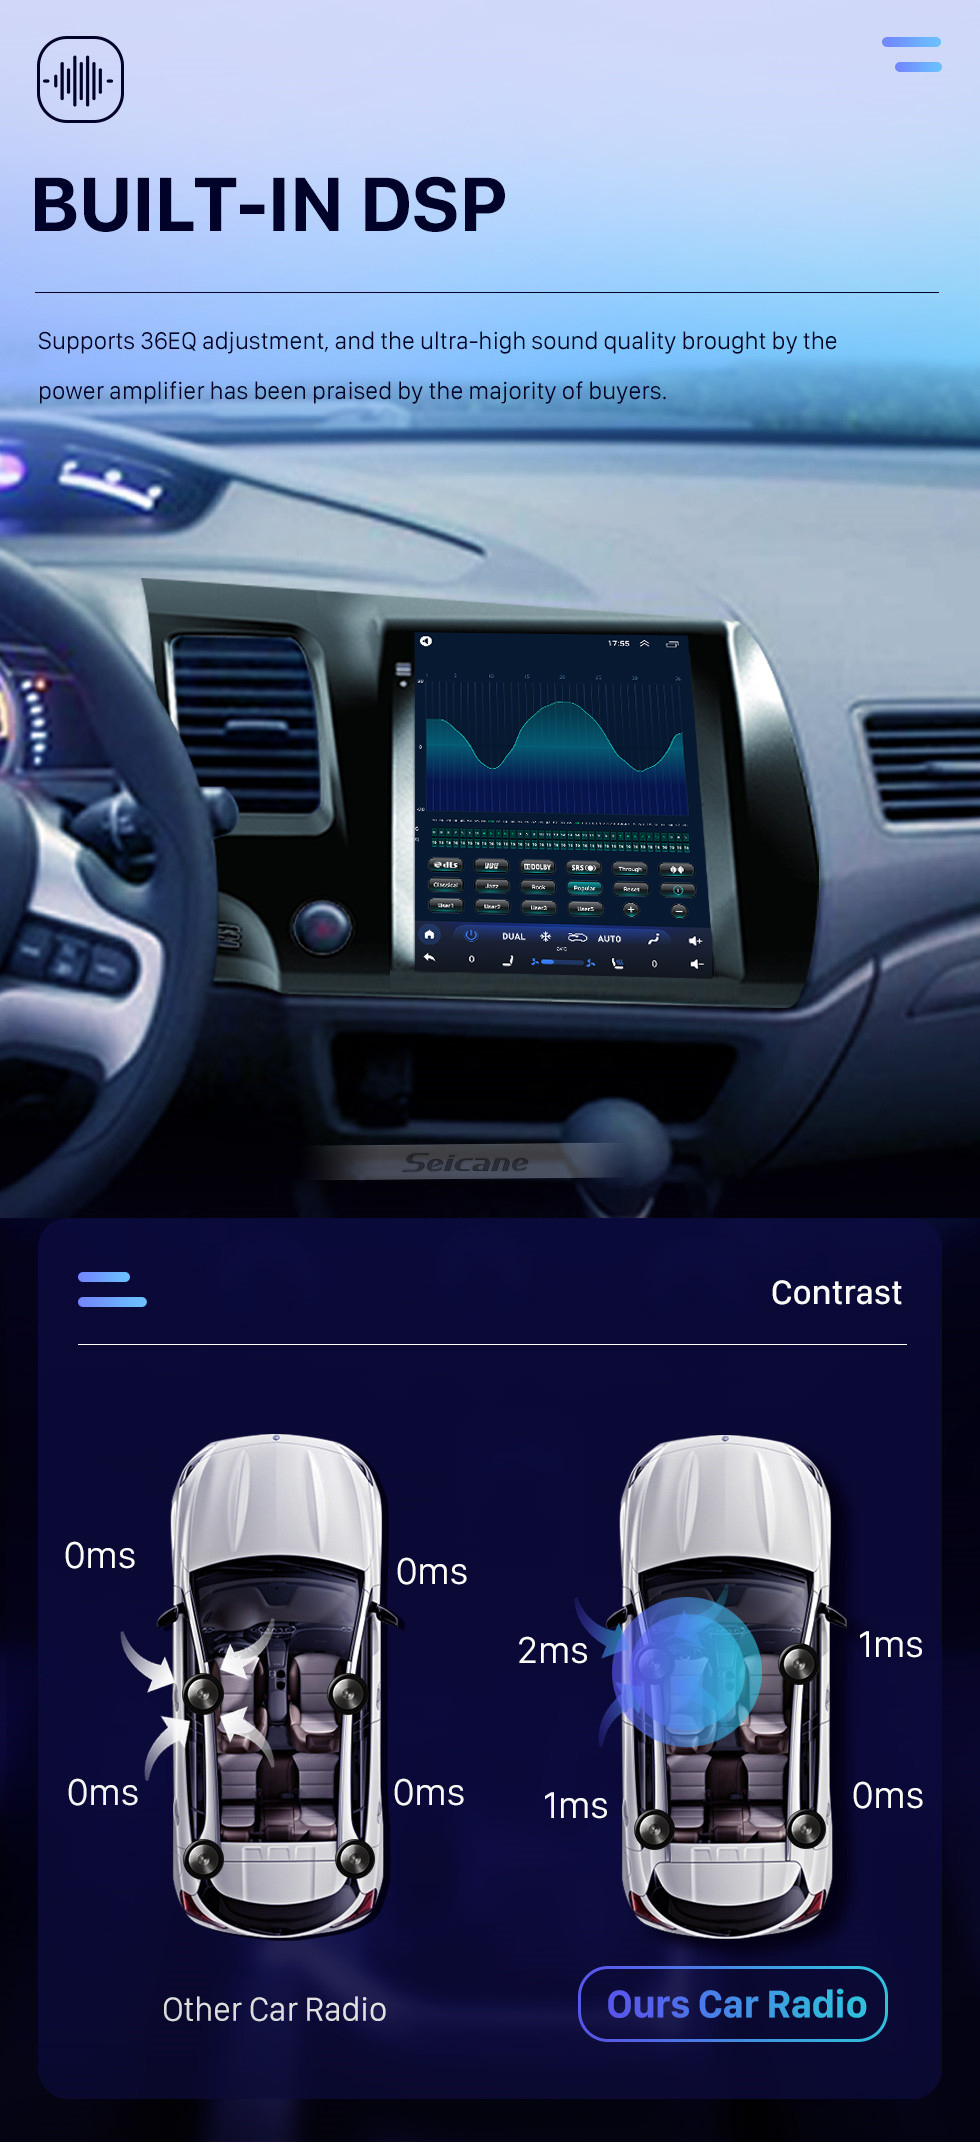 Seicane Pantalla táctil HD de 9.7 pulgadas para 2004-2009 Honda Civic LHD Android 10.0 Autoradio Sistema estéreo para automóvil con Bluetooth Carplay DSP incorporado Compatibilidad con cámara DVR de 360 °